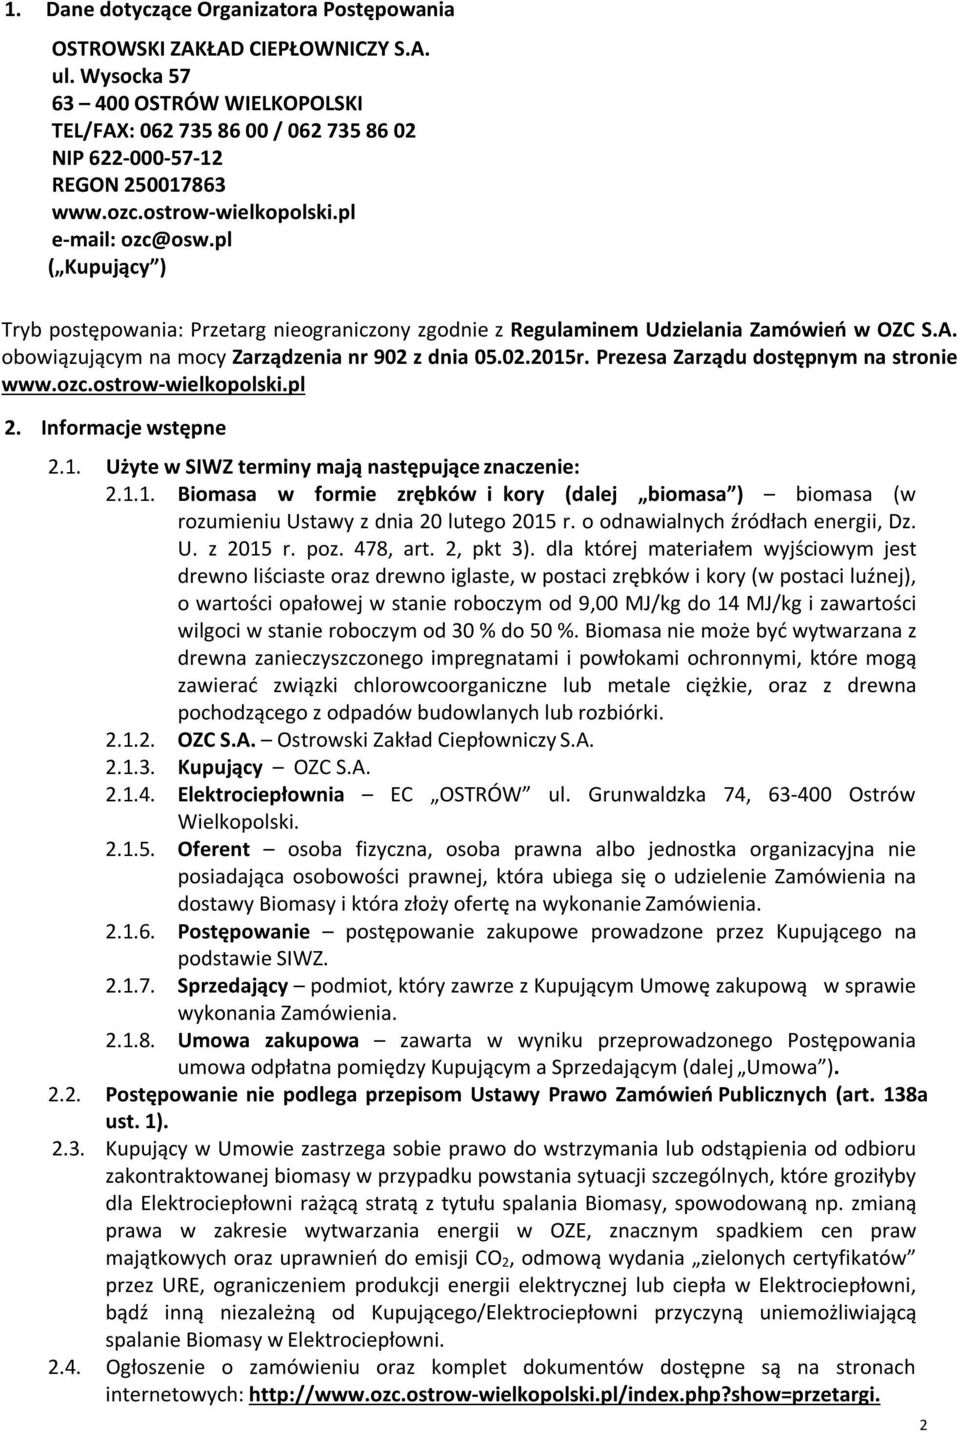 obowiązującym na mocy Zarządzenia nr 902 z dnia 05.02.2015r. Prezesa Zarządu dostępnym na stronie www.ozc.ostrow-wielkopolski.pl 2. Informacje wstępne 2.1. Użyte w SIWZ terminy mają następujące znaczenie: 2.